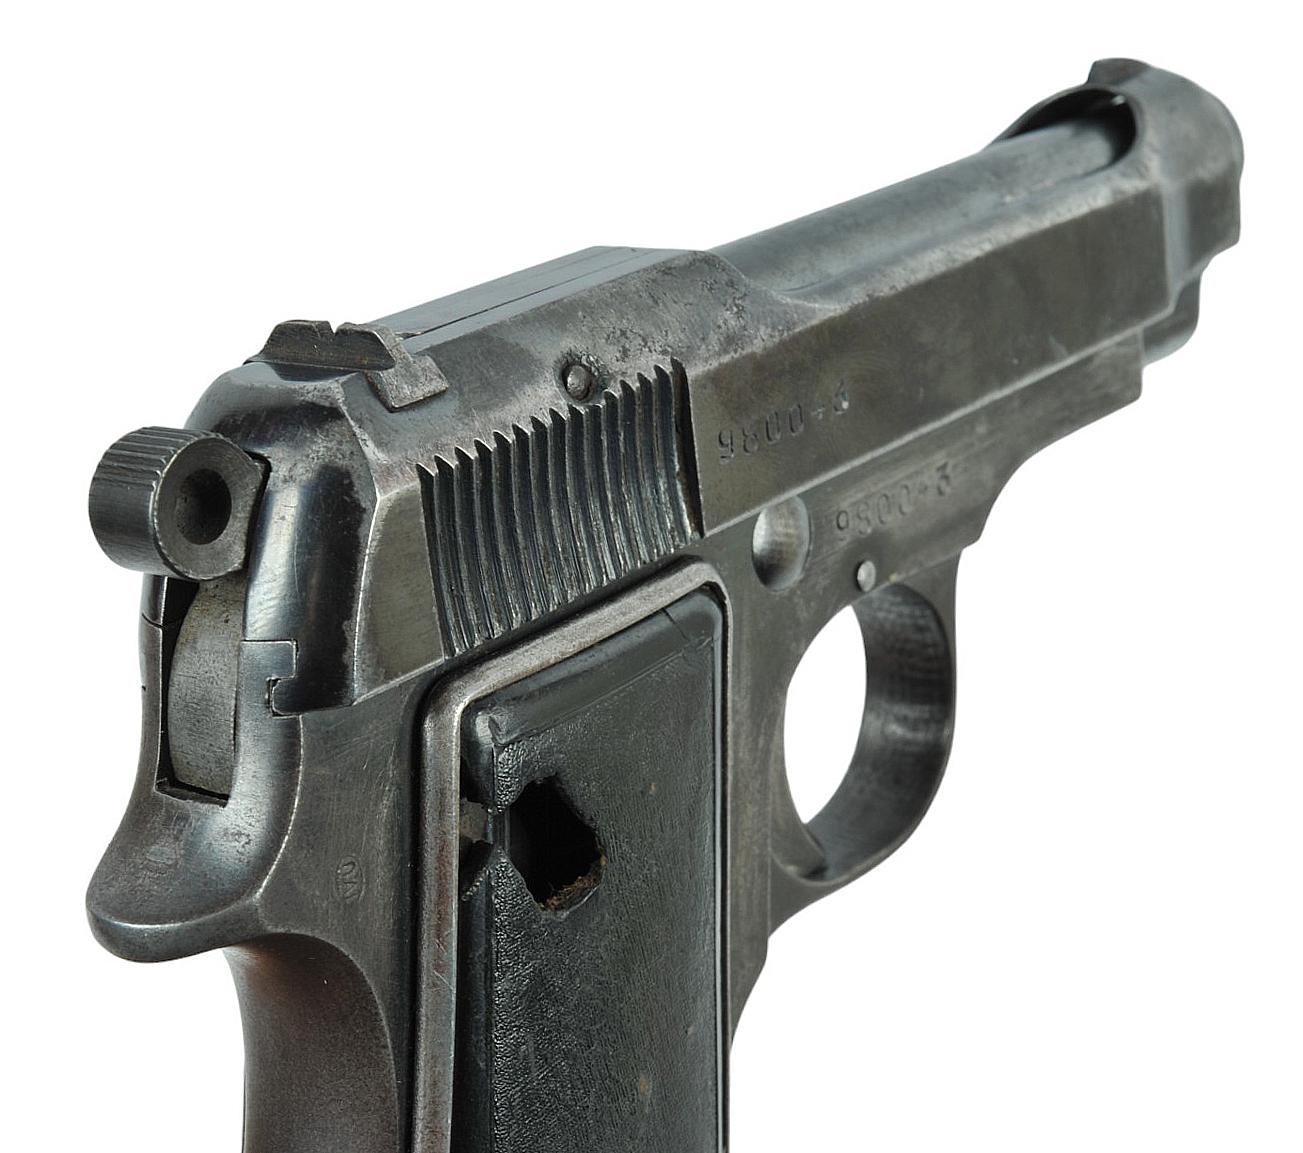 Italian Military WWII era Beretta M34 9mm Corto (.380) Semi-Automatic Pistol - FFL # 980043 (SGF1)